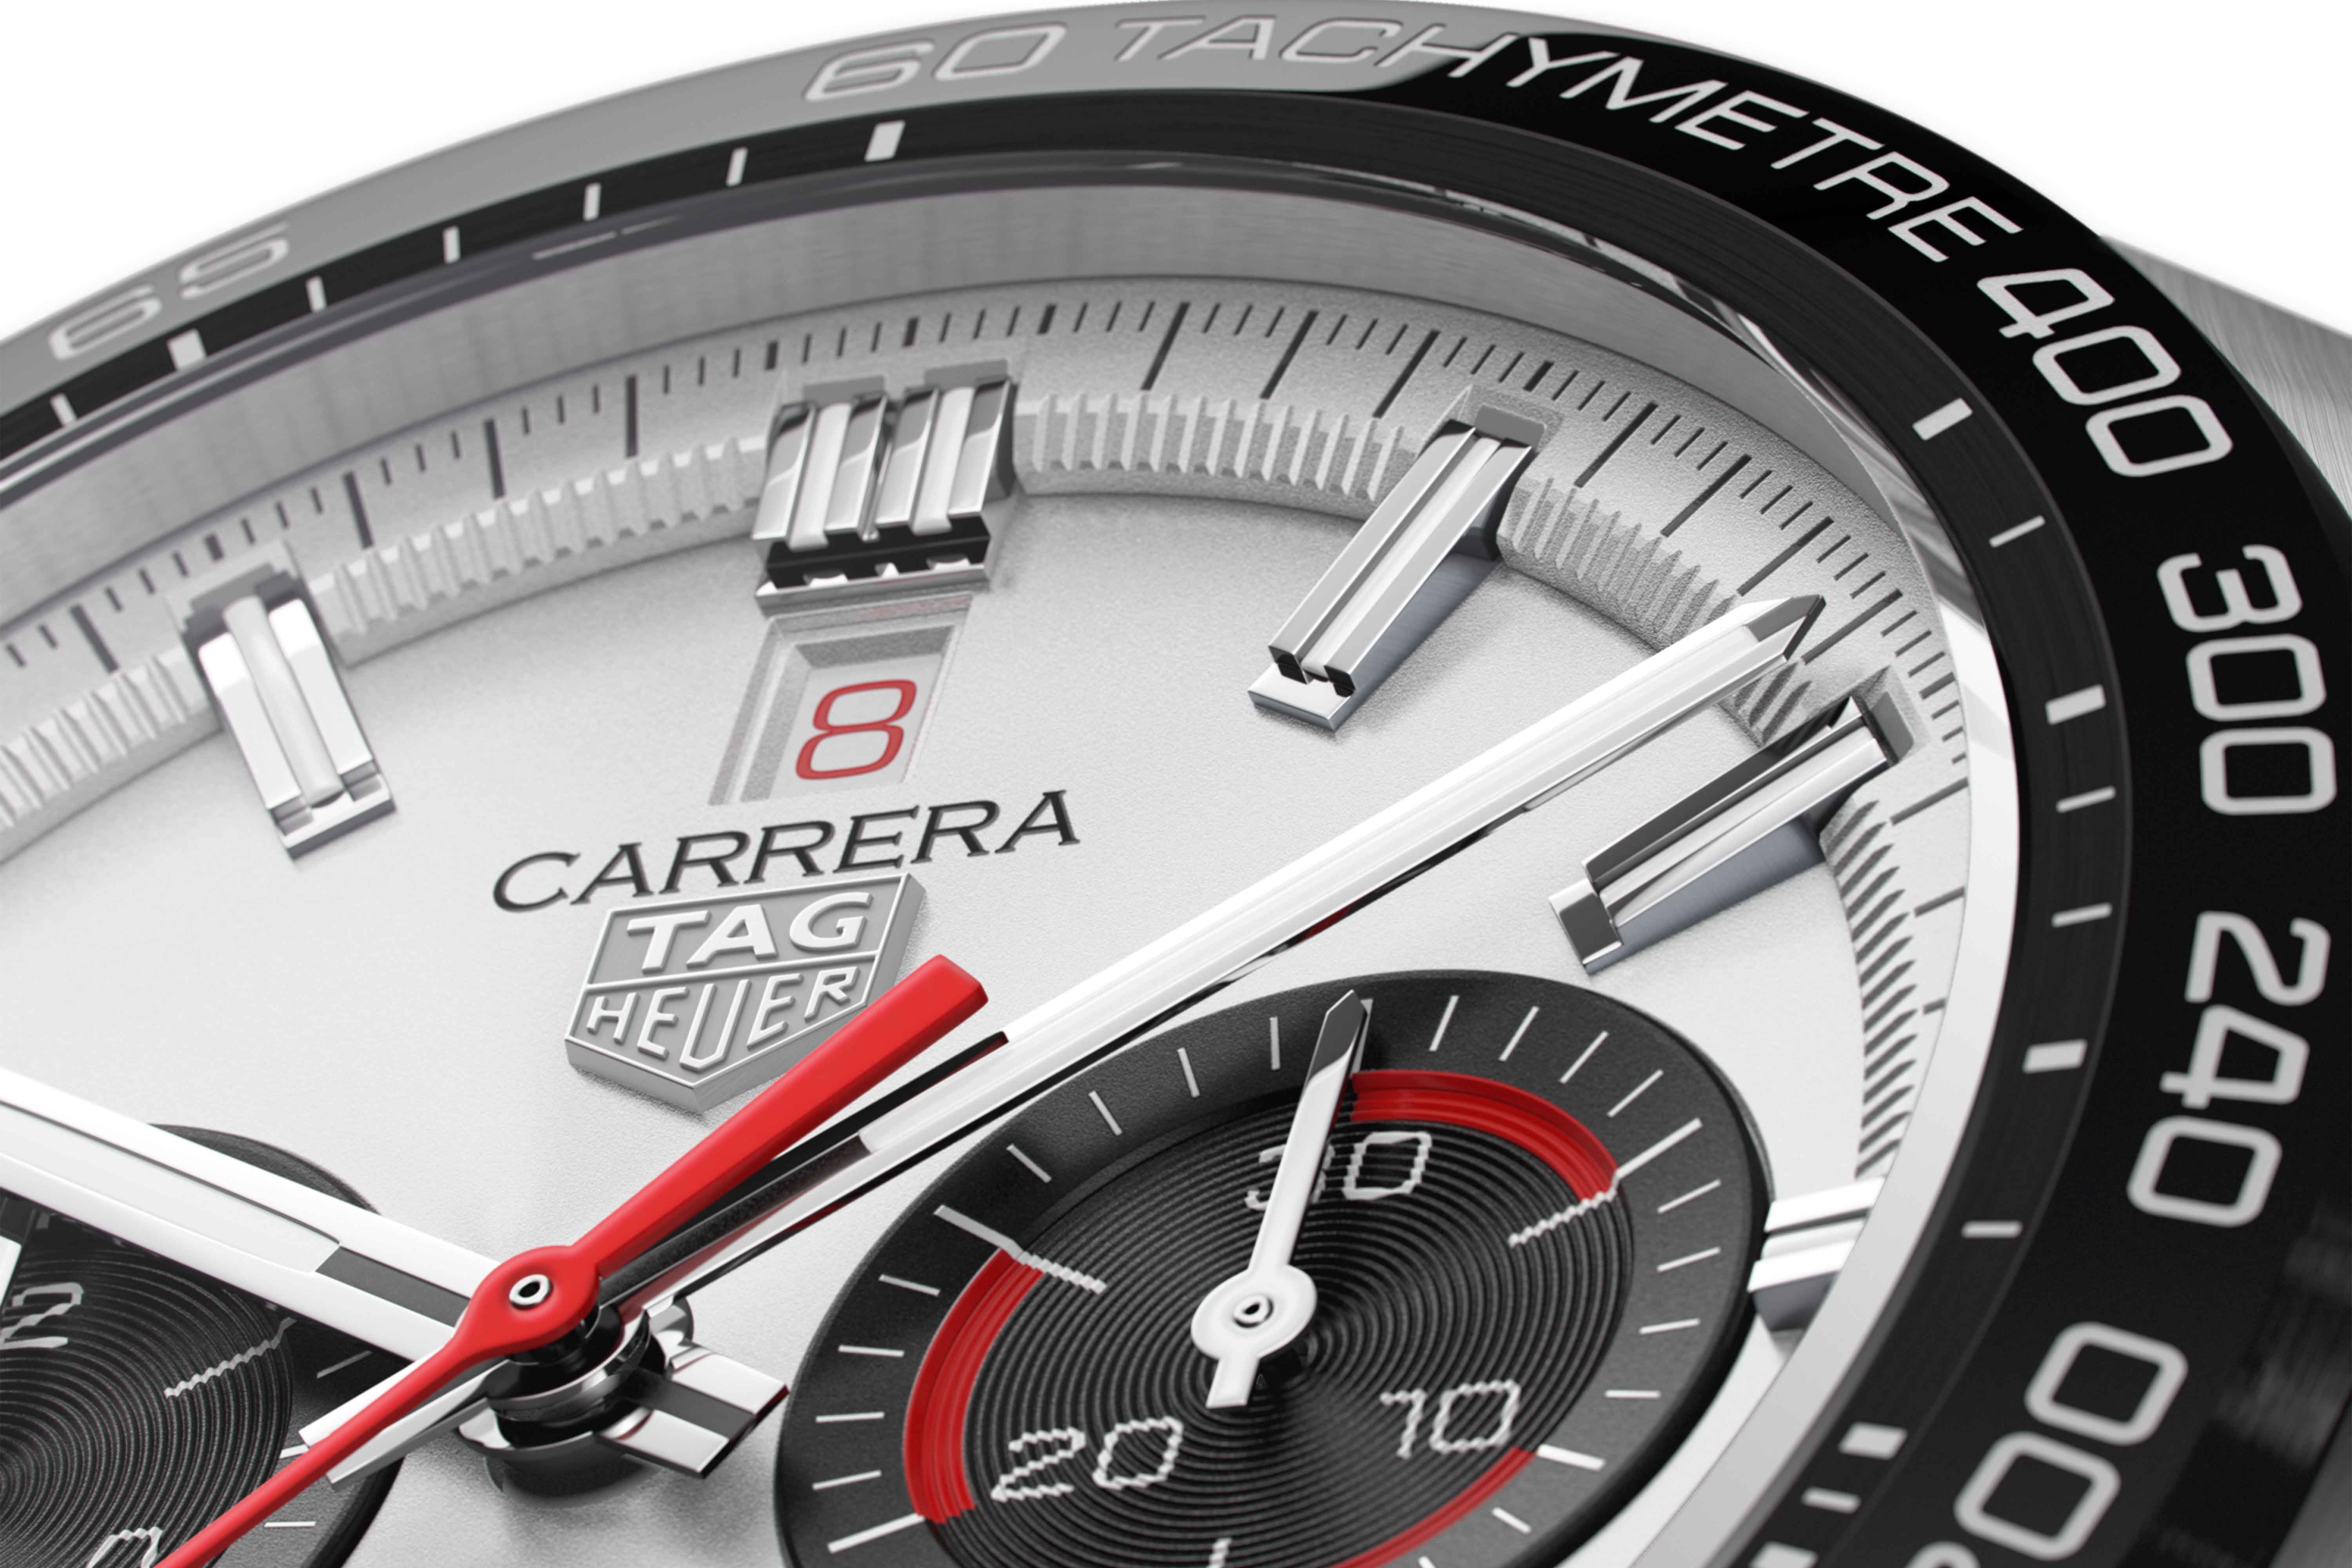 Điểm nổi bật của mẫu Carrera Sport 160 năm này là thông tin ngày đỏ rực tại vị trí 12 giờ. Ảnh: Hodinkee